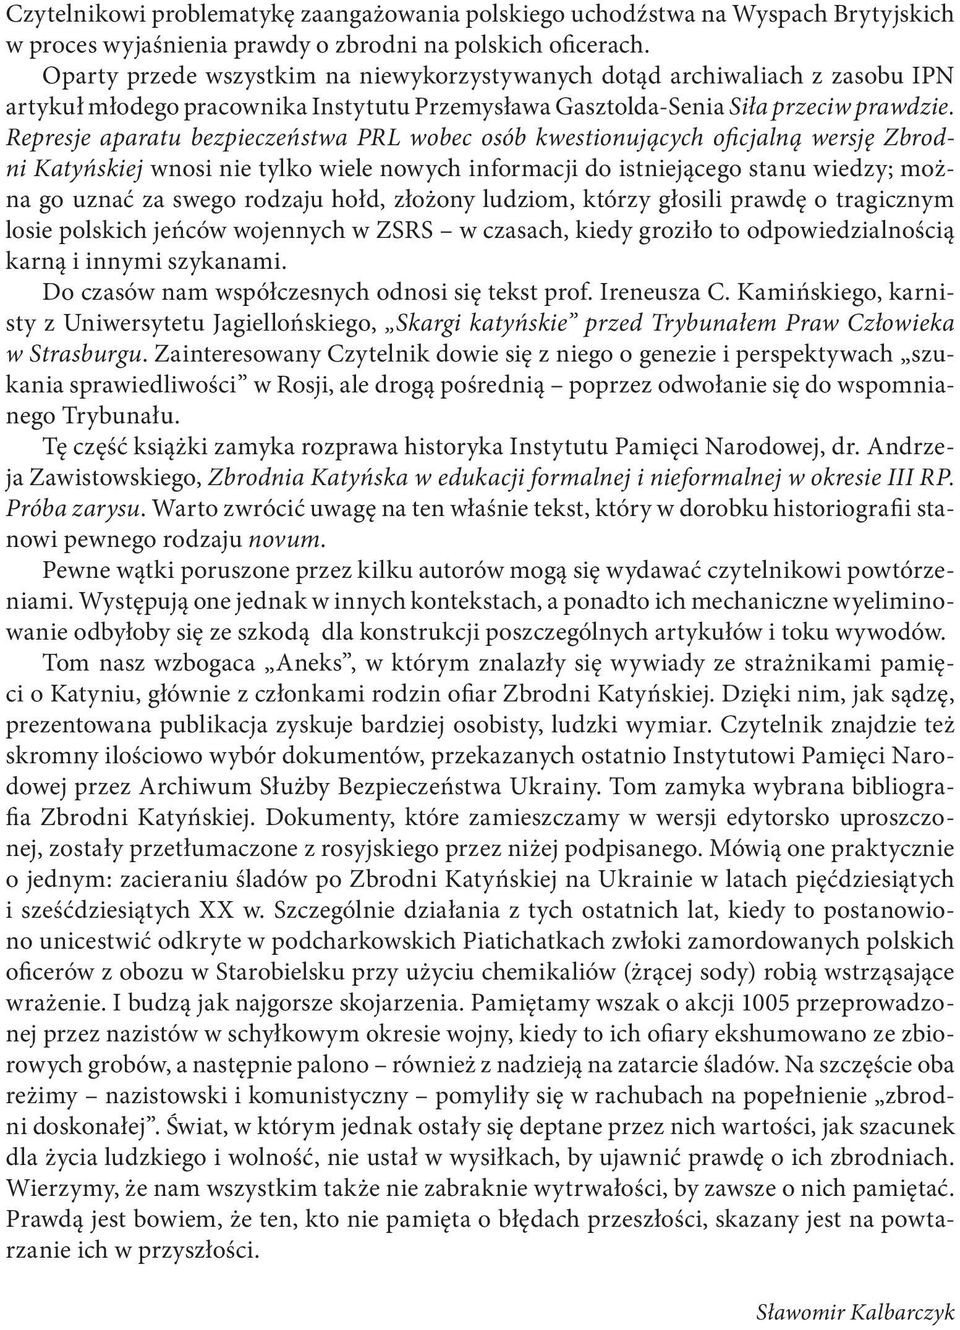 Represje aparatu bezpieczeństwa PRL wobec osób kwestionujących oficjalną wersję Zbrodni Katyńskiej wnosi nie tylko wiele nowych informacji do istniejącego stanu wiedzy; można go uznać za swego